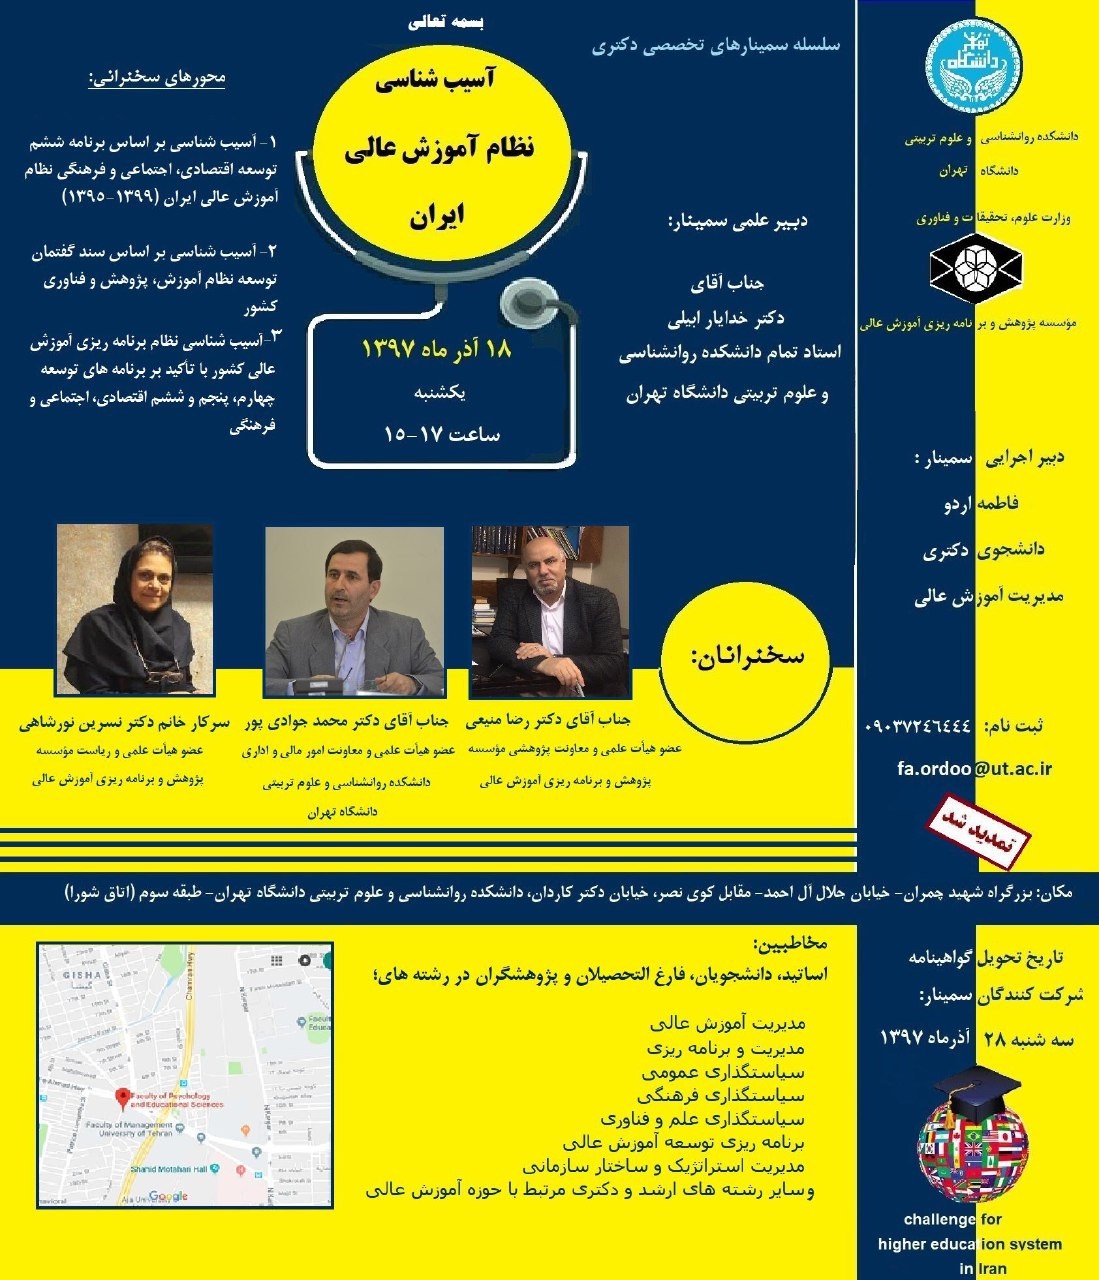 نظام آموزش عالی ایران در دانشگاه تهران آسیب شناسی می‌شود